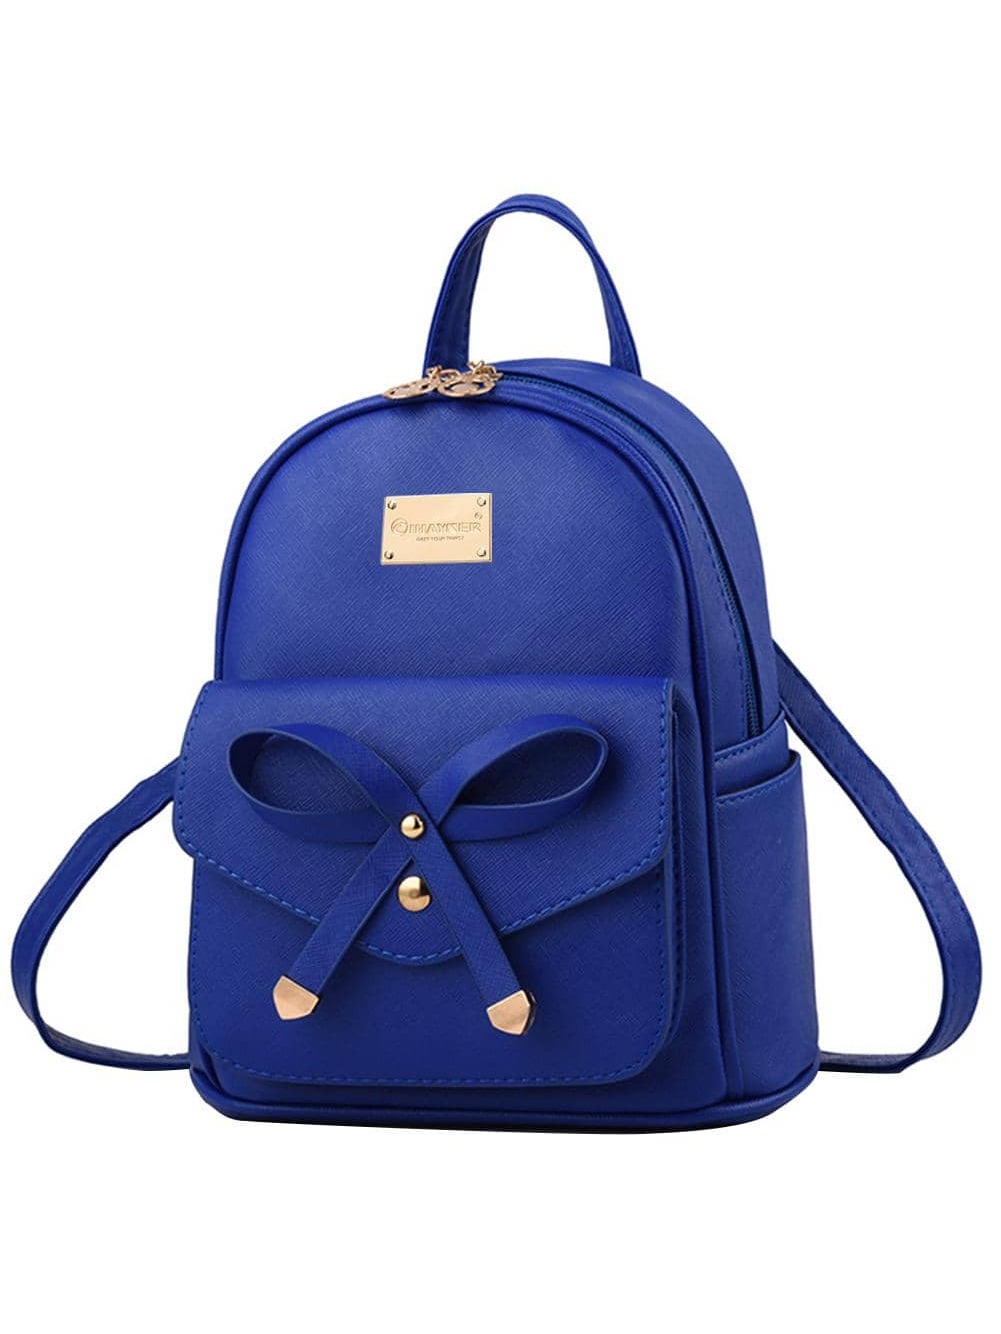 I IHAYNER, королевский синий рюкзак женский с принтом тигра и животных школьный рюкзак для девочек подростков